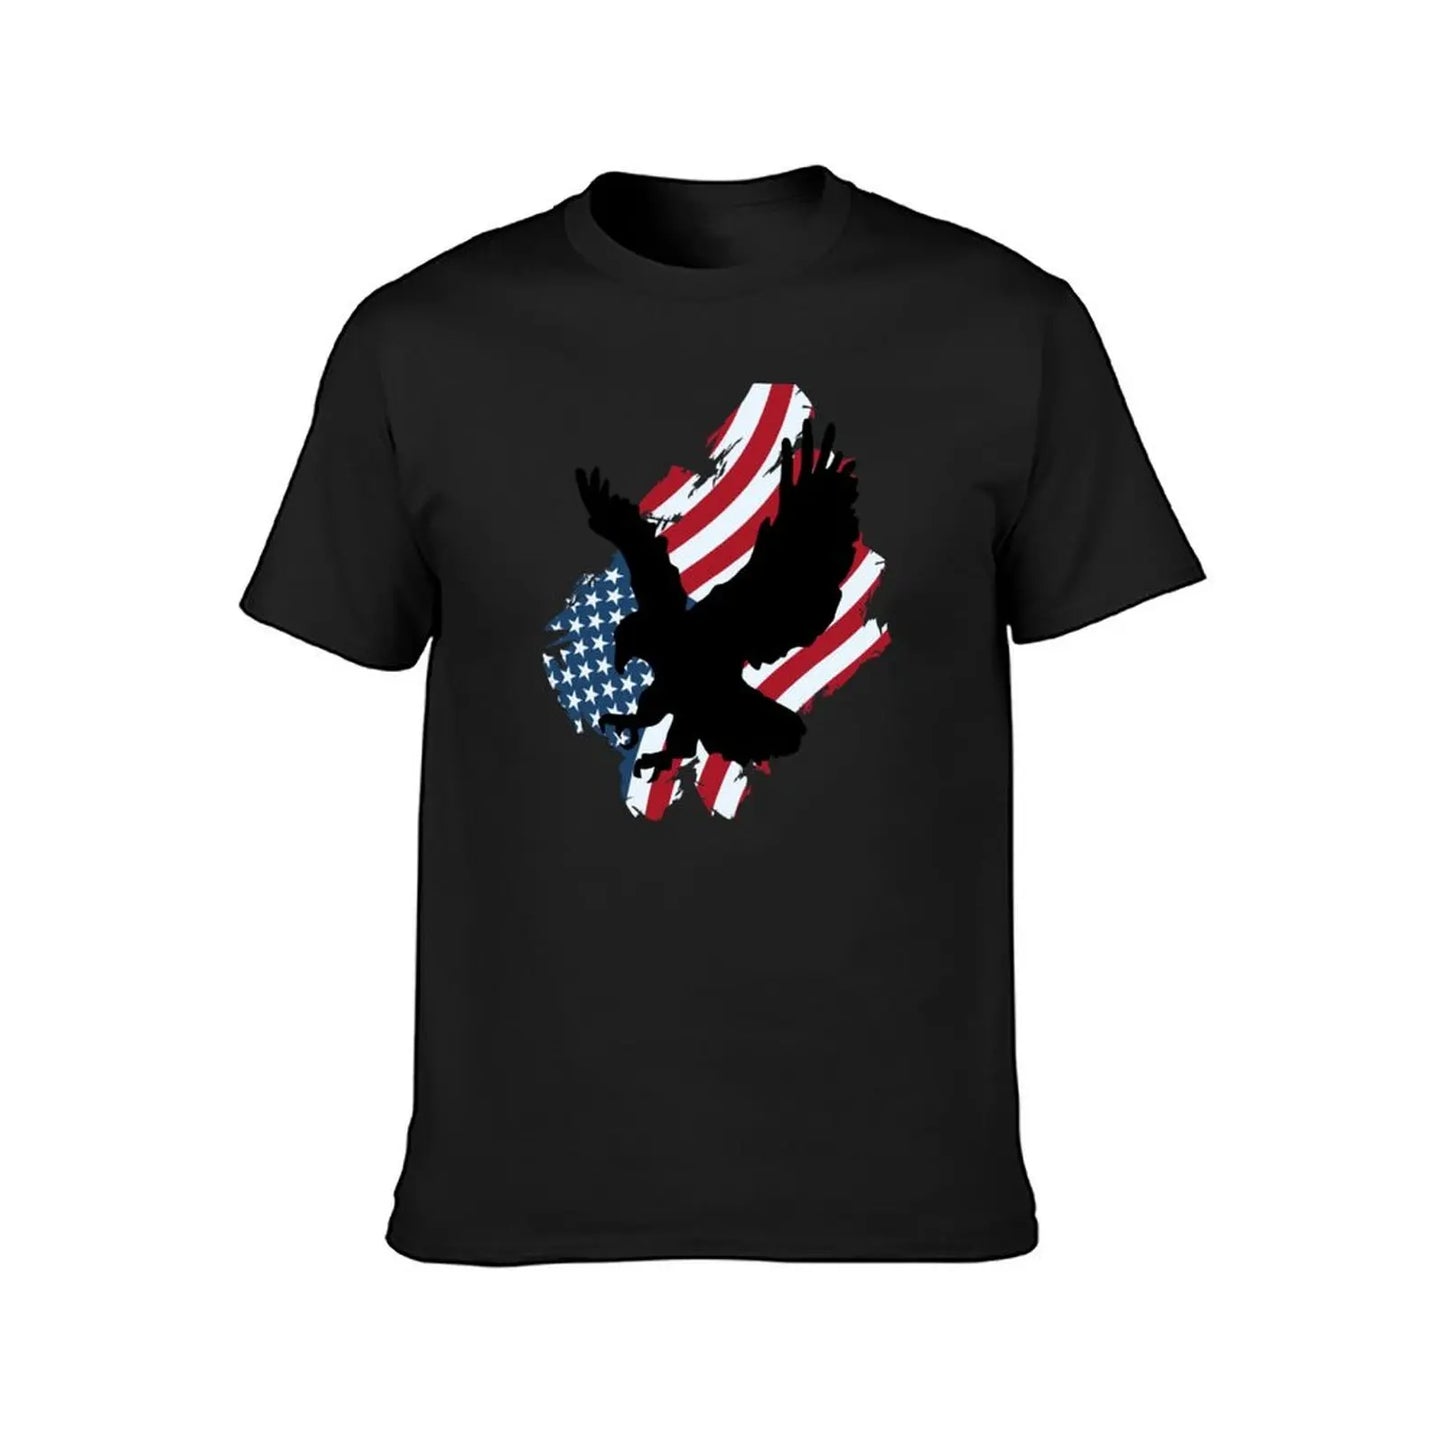 Eagle Distressed USA Flag T-Shirt Boys Animal Print Fashion Mens Clothing - Lizard Vigilante